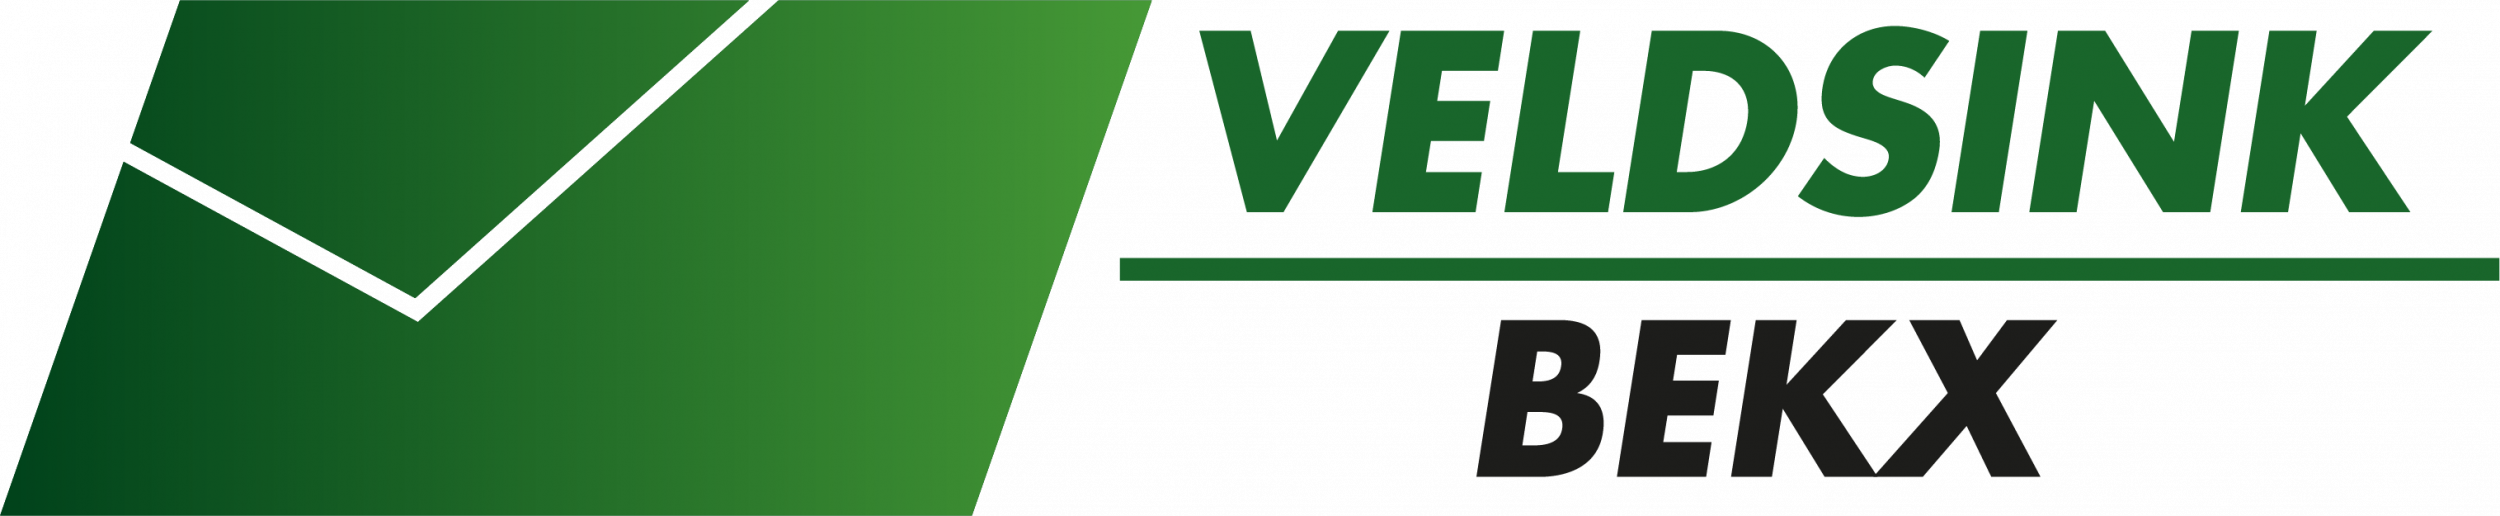 Logo-Veldsink-Bekx-2020_RGB.png